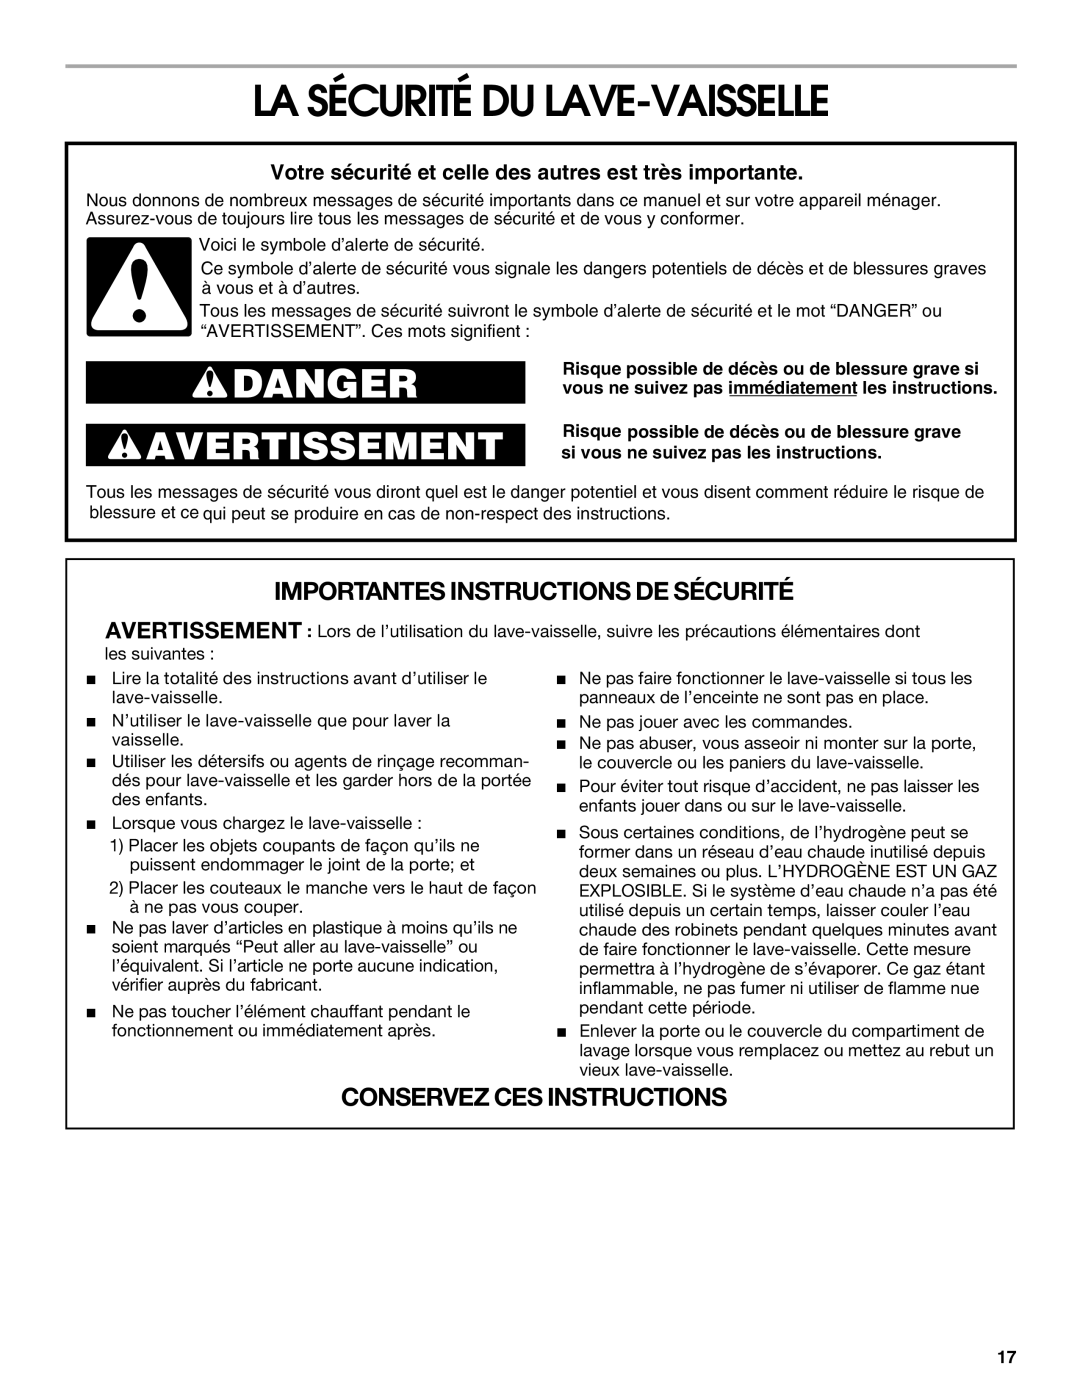 Whirlpool RUD4000 manual La Sécurité Du Lave-Vaisselle, Votre sécurité et celle des autres est très importante, Danger 